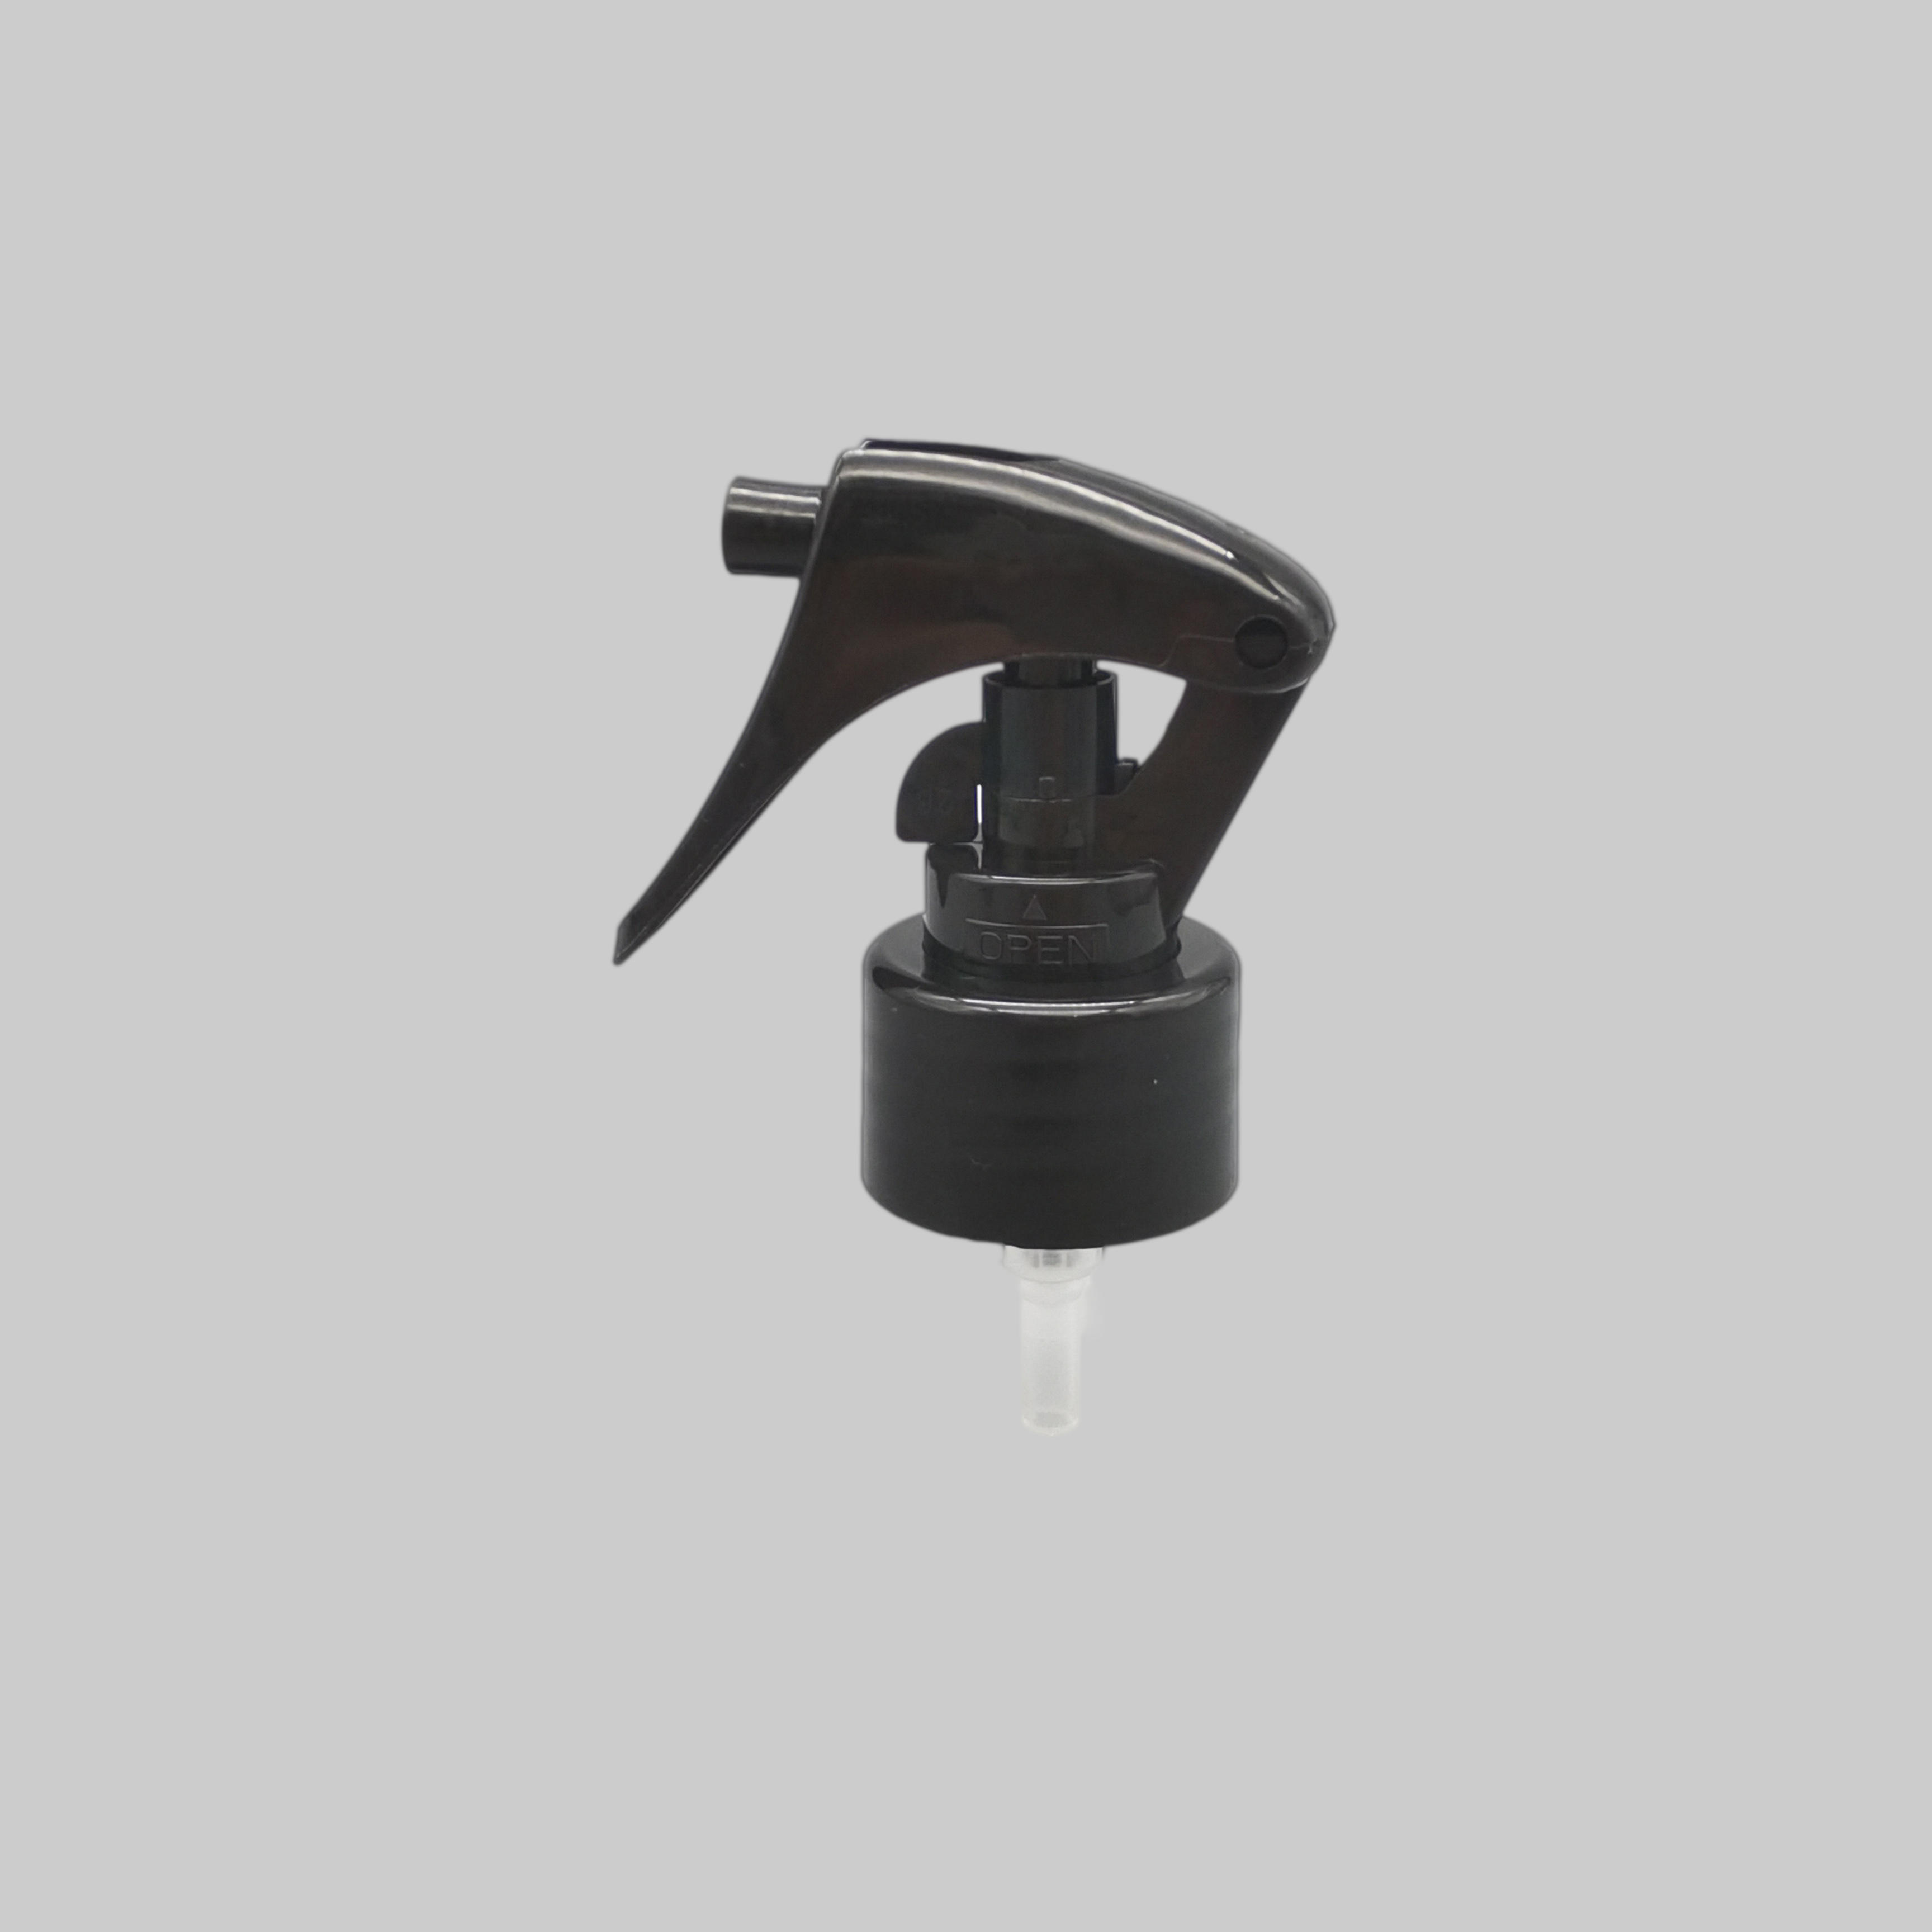 Trigger sprayer SC-T015-28-410